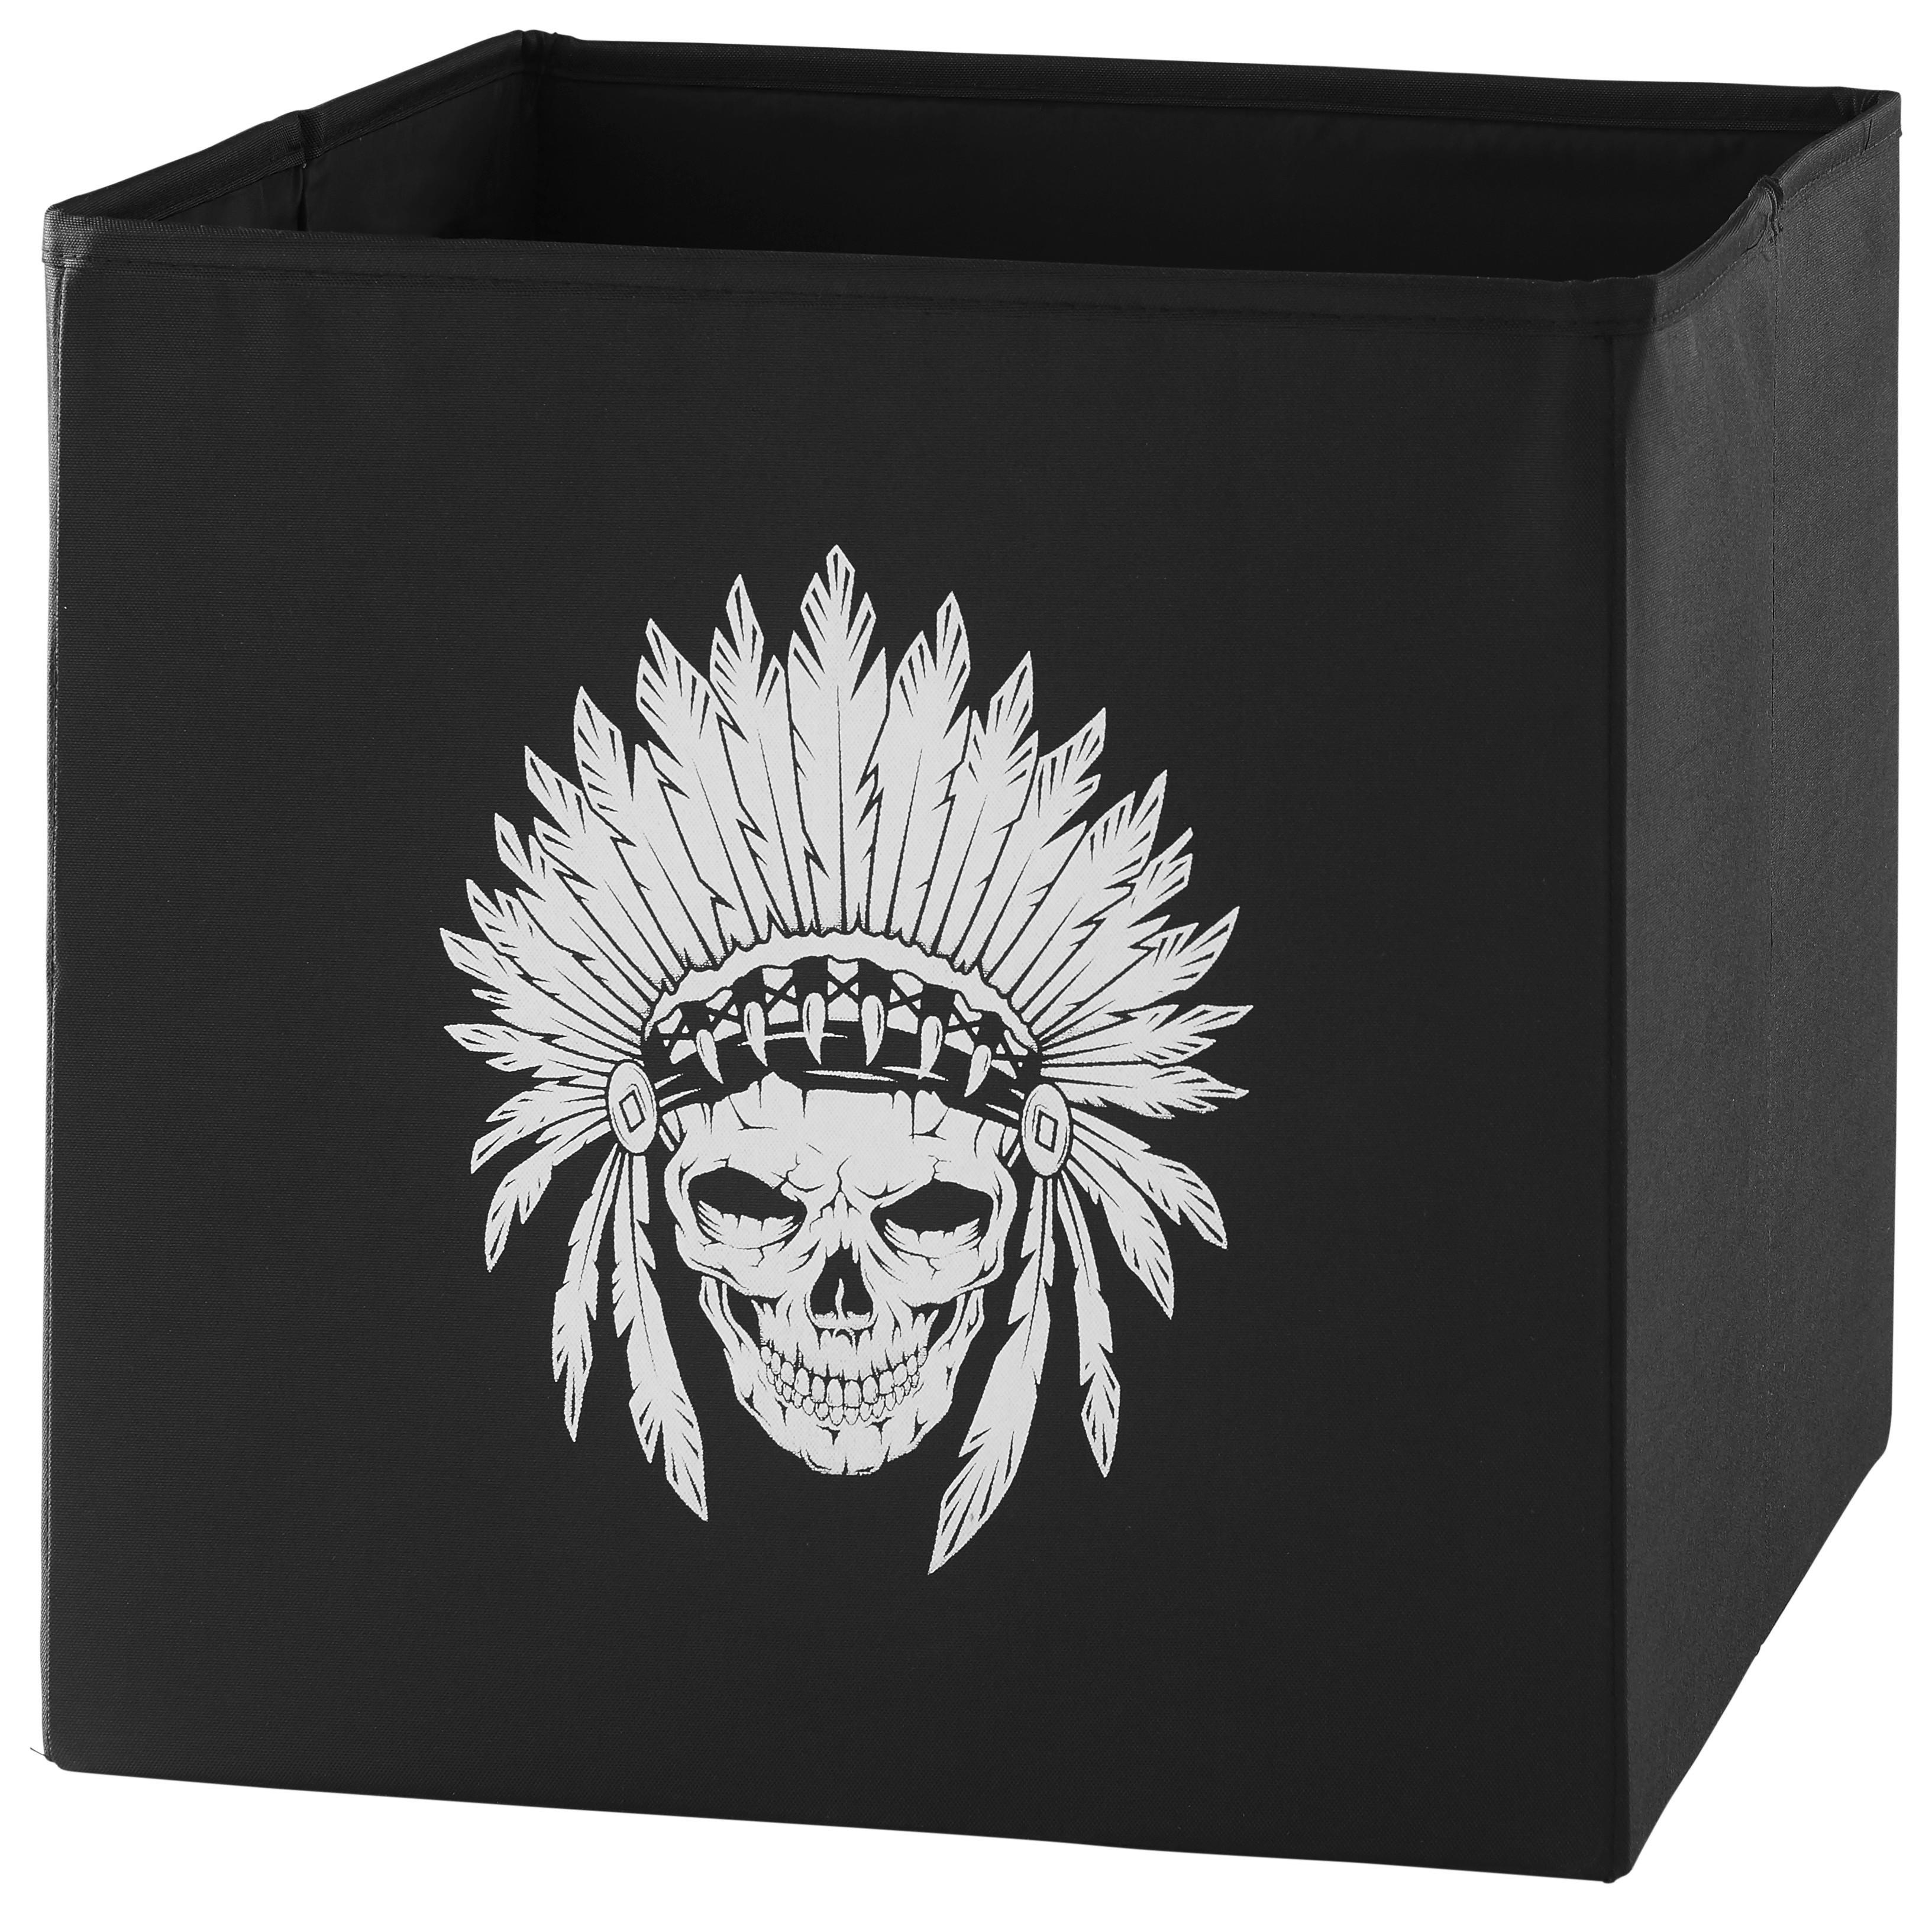 Skládací Krabice Michi, 30/30/30 Cm - bílá/černá, textil (30/30/30cm) - Modern Living